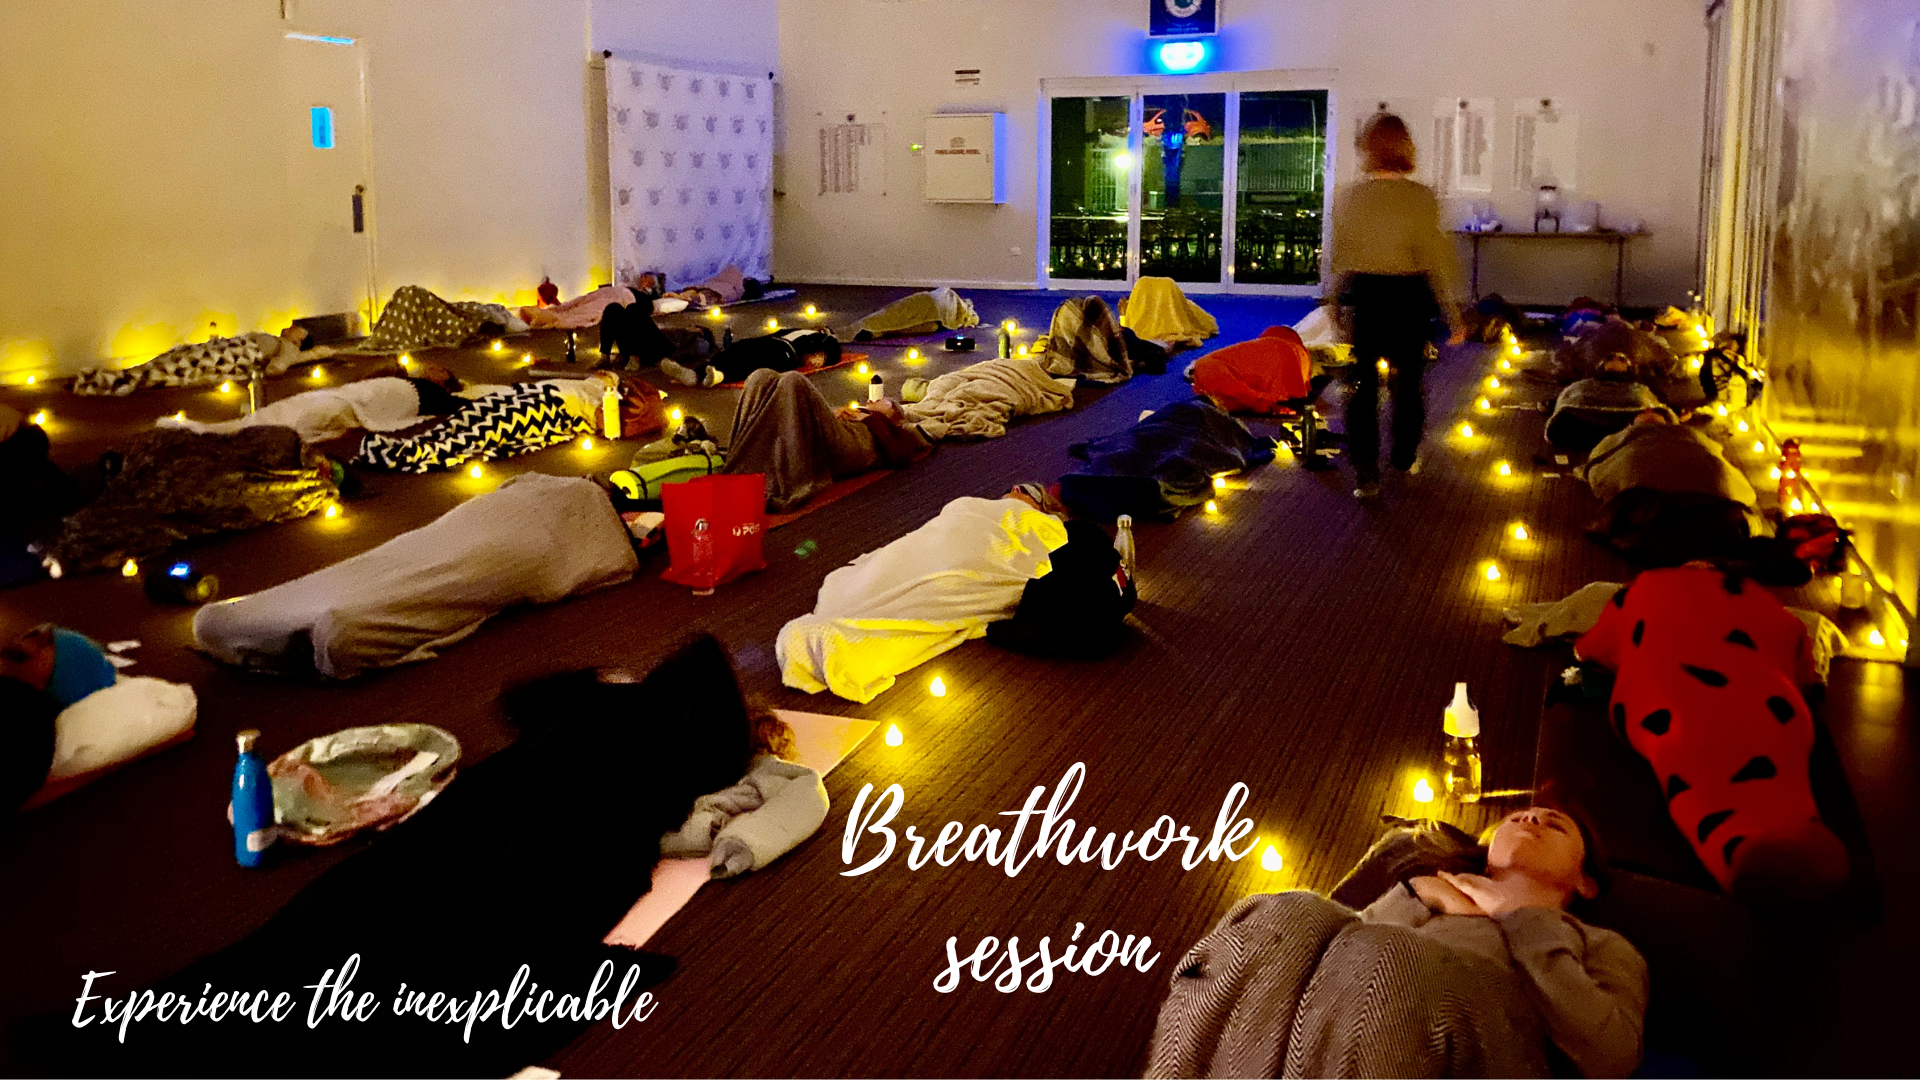 Breathwork session - Mount Flora Museum - 11/10 @5:45pm